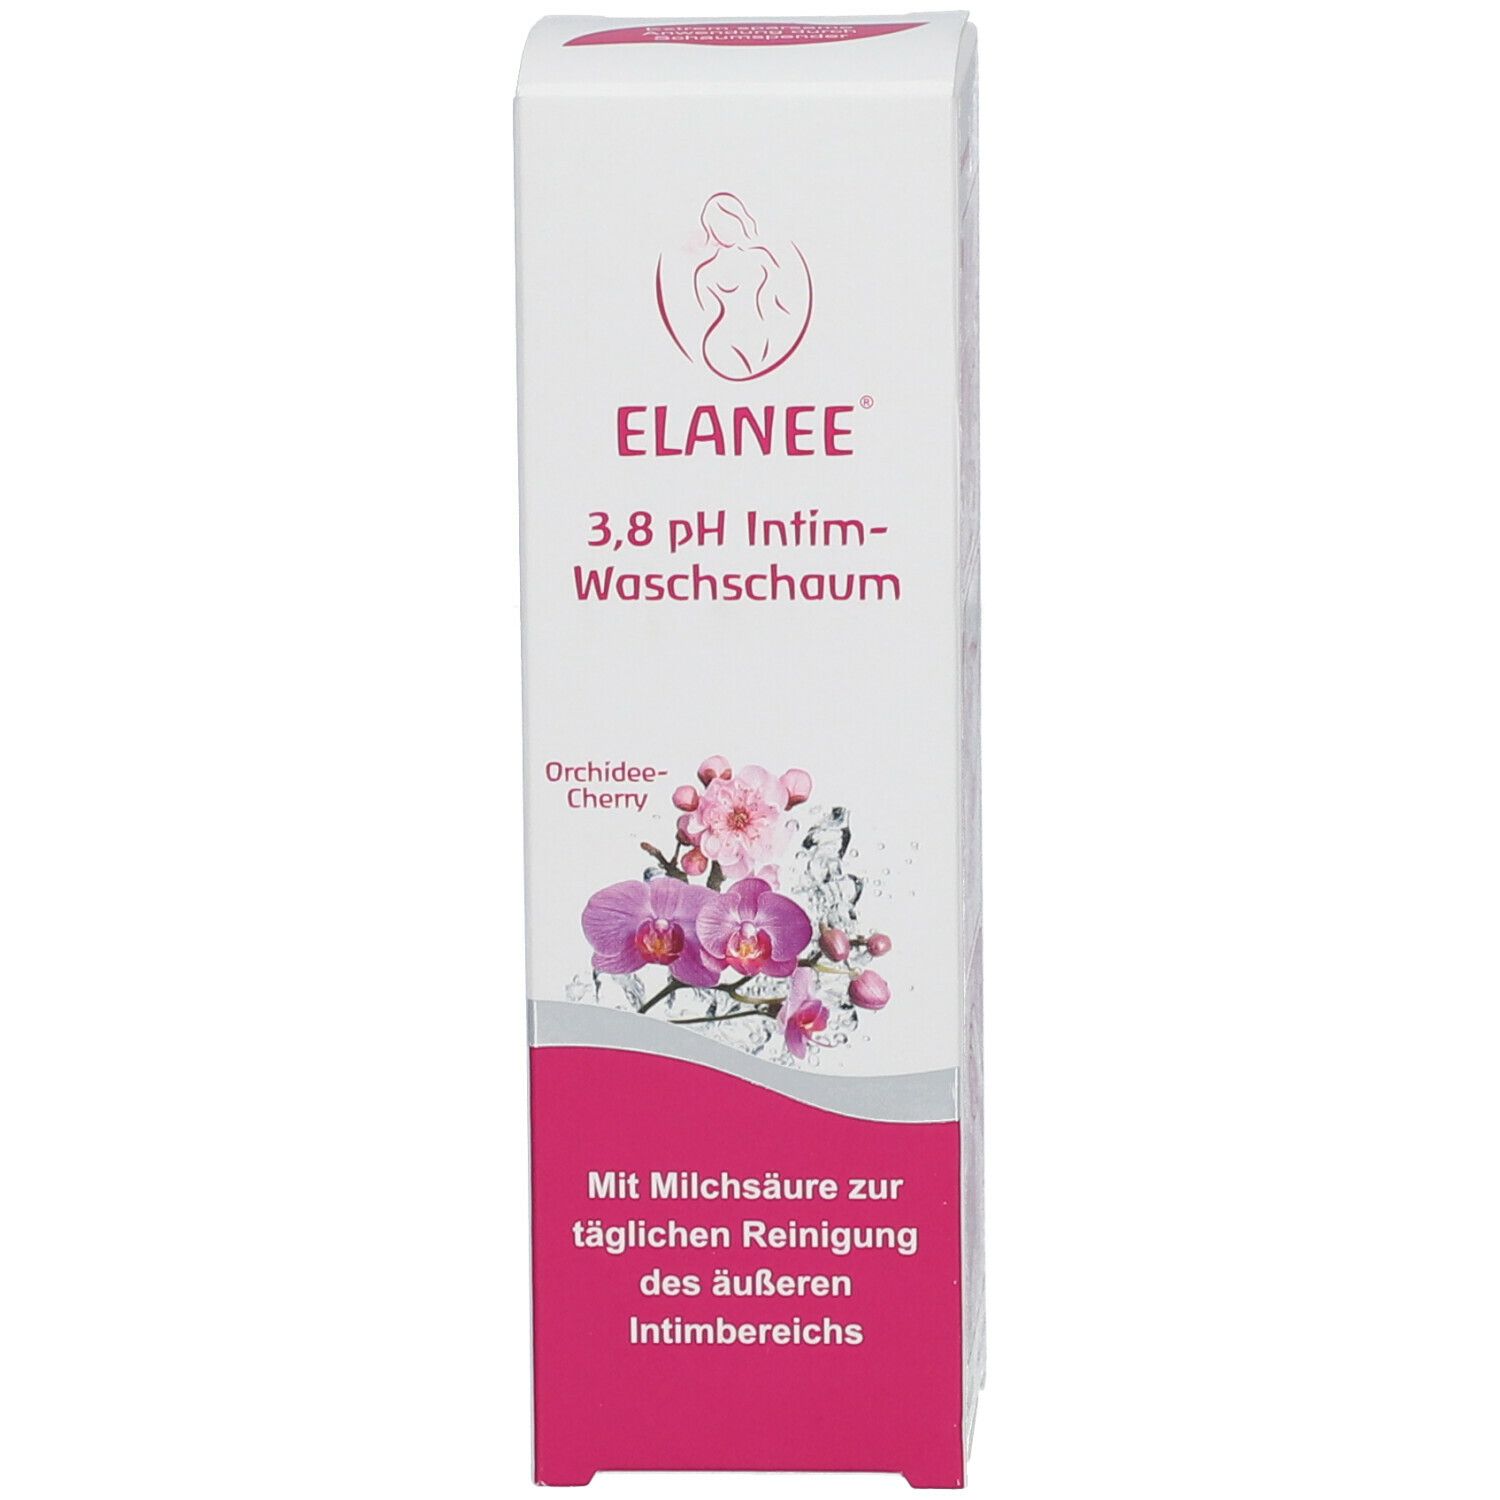 ELANEE® 3,8 pH Intimwaschschaum